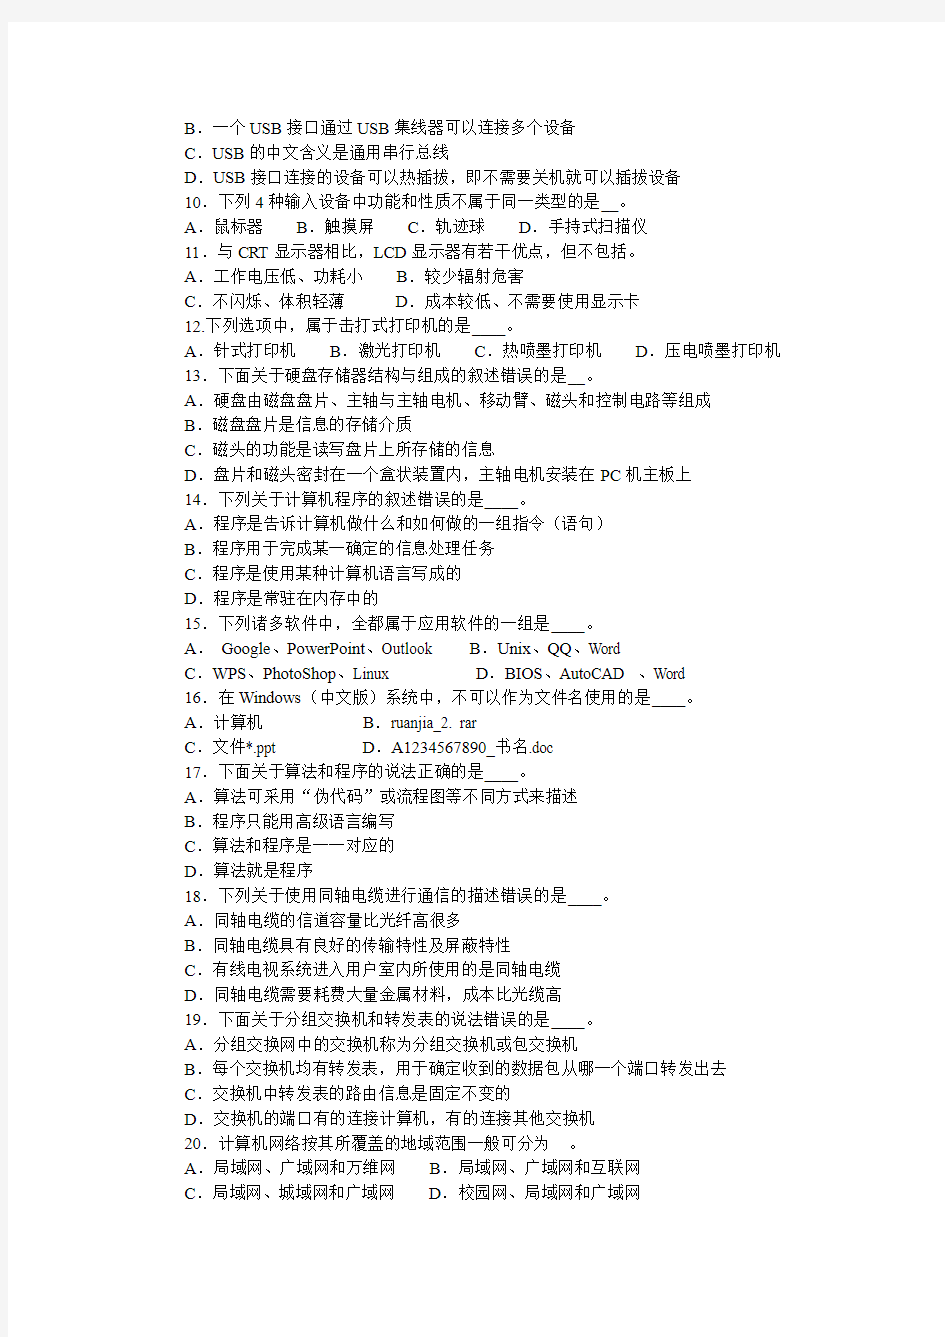 江苏计算机等级考试2013年(春)一级考试试卷 (2)